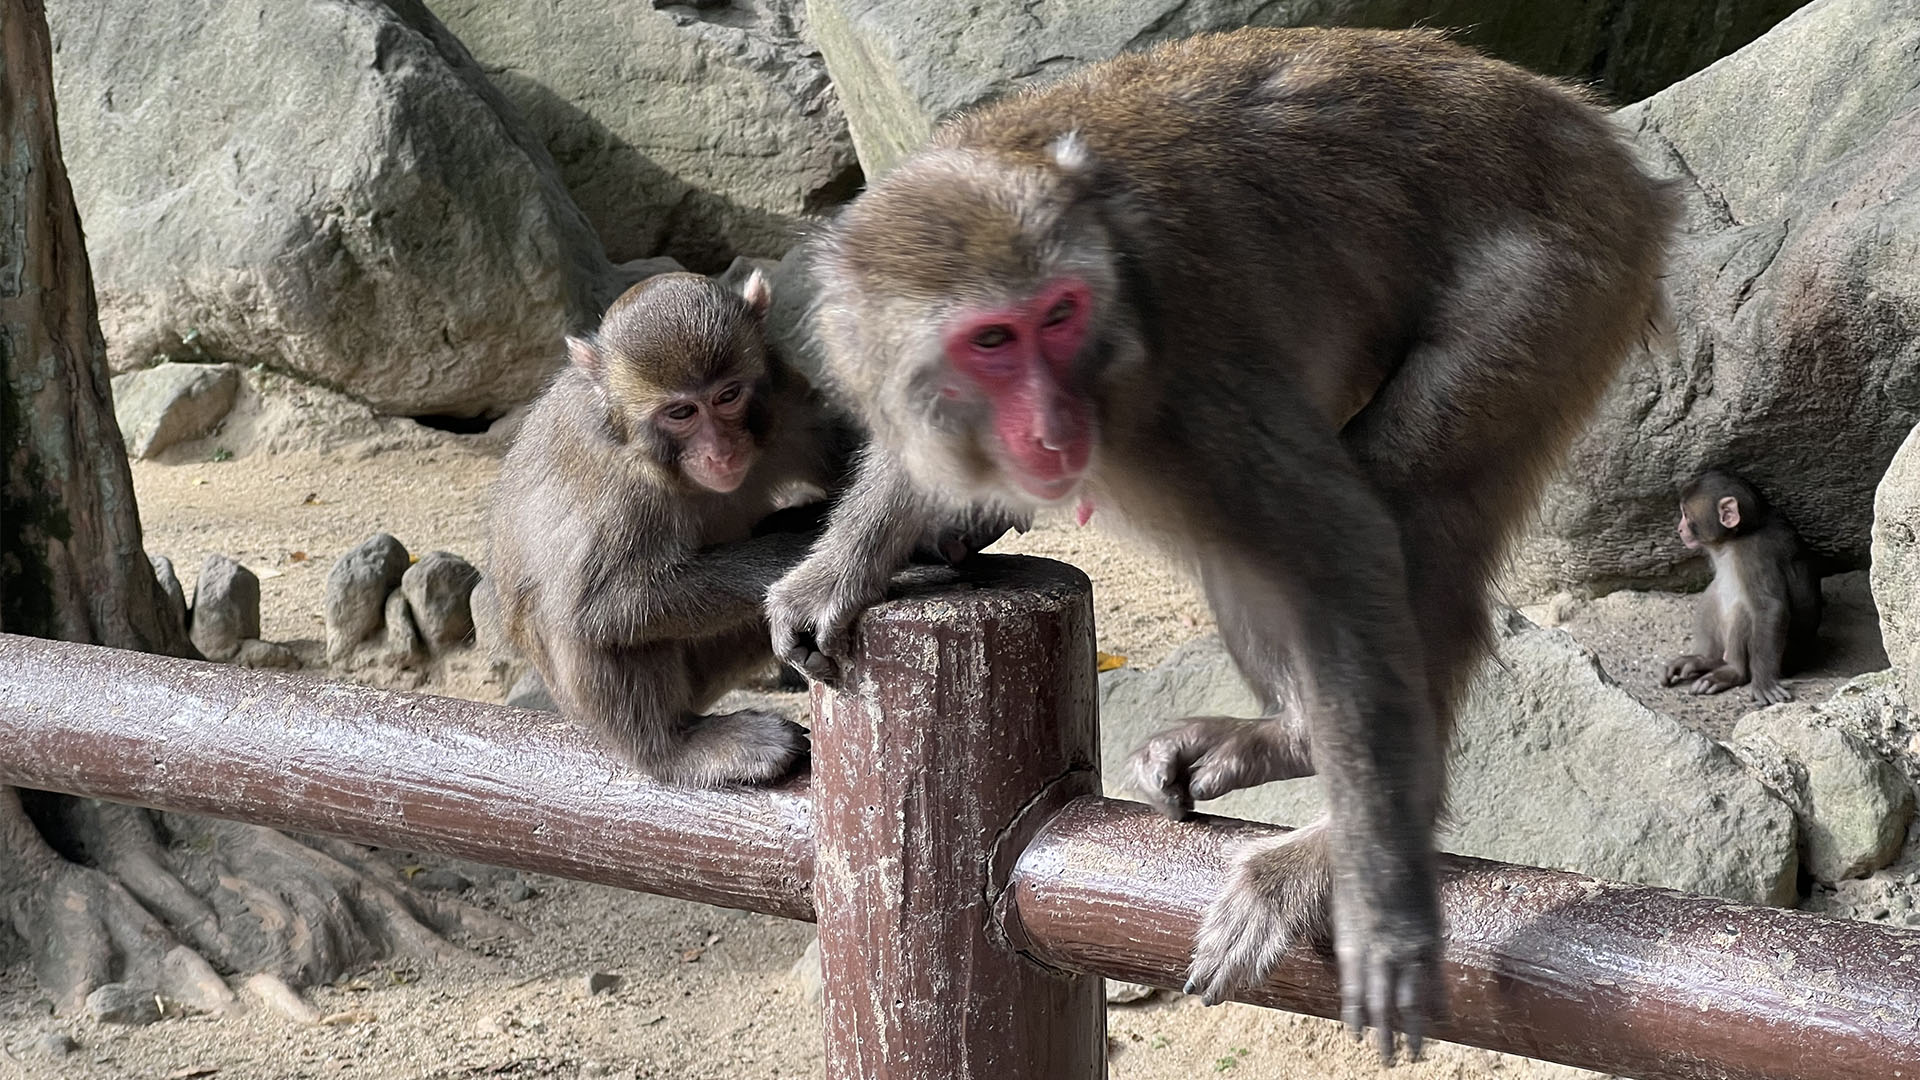 Beppu Hot Spring & Takasakiyama Monkey Park Day Trip